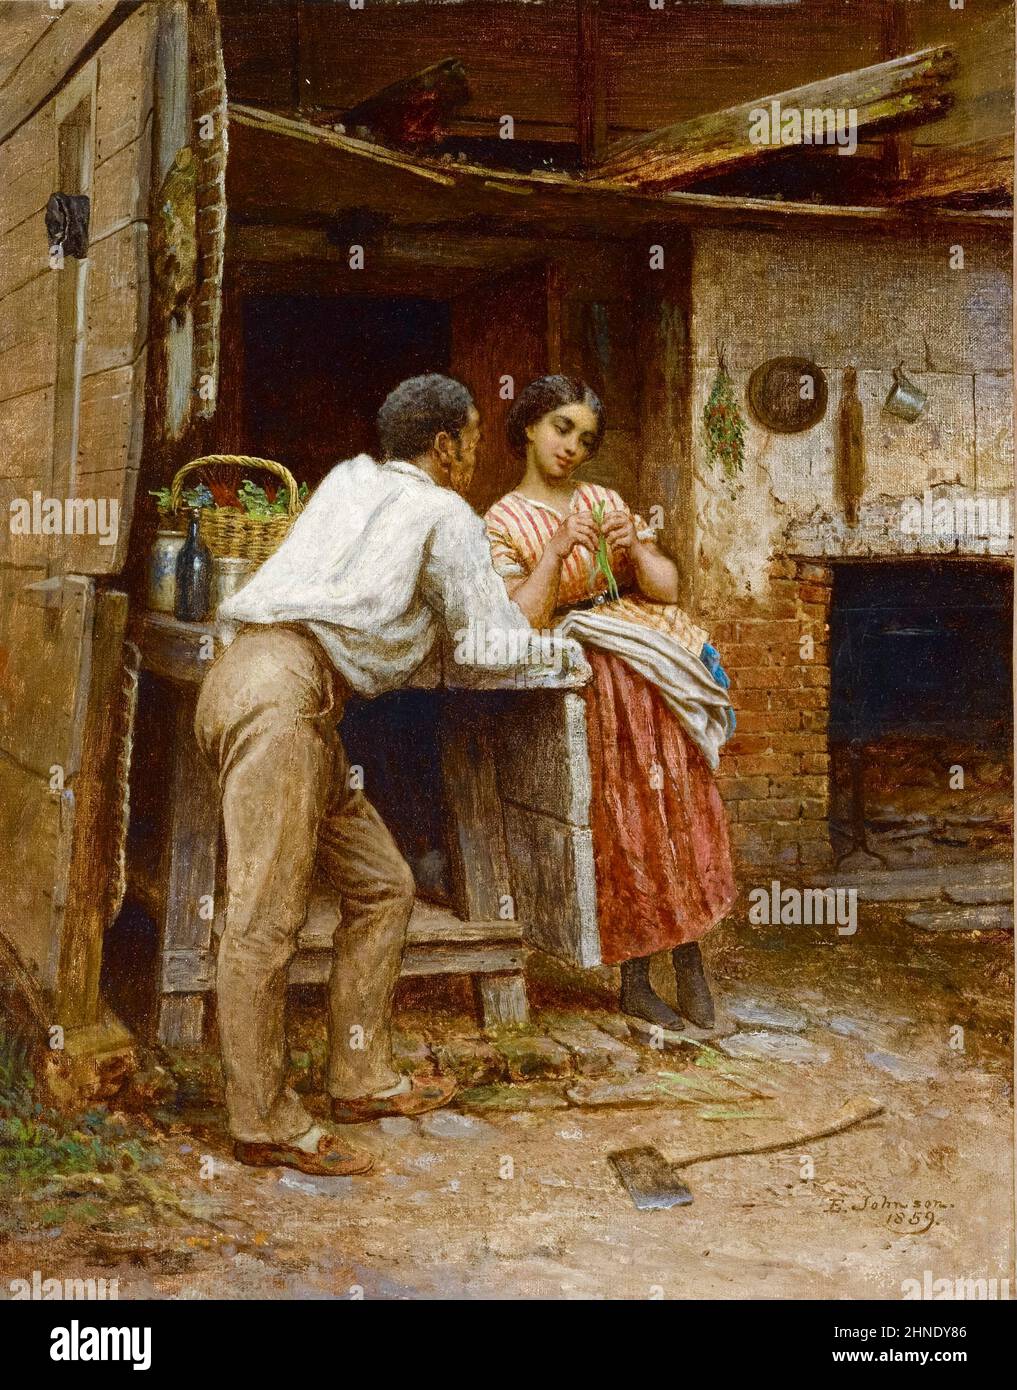 Eastman Johnson, cour du Sud, peinture, huile sur toile, 1859 Banque D'Images